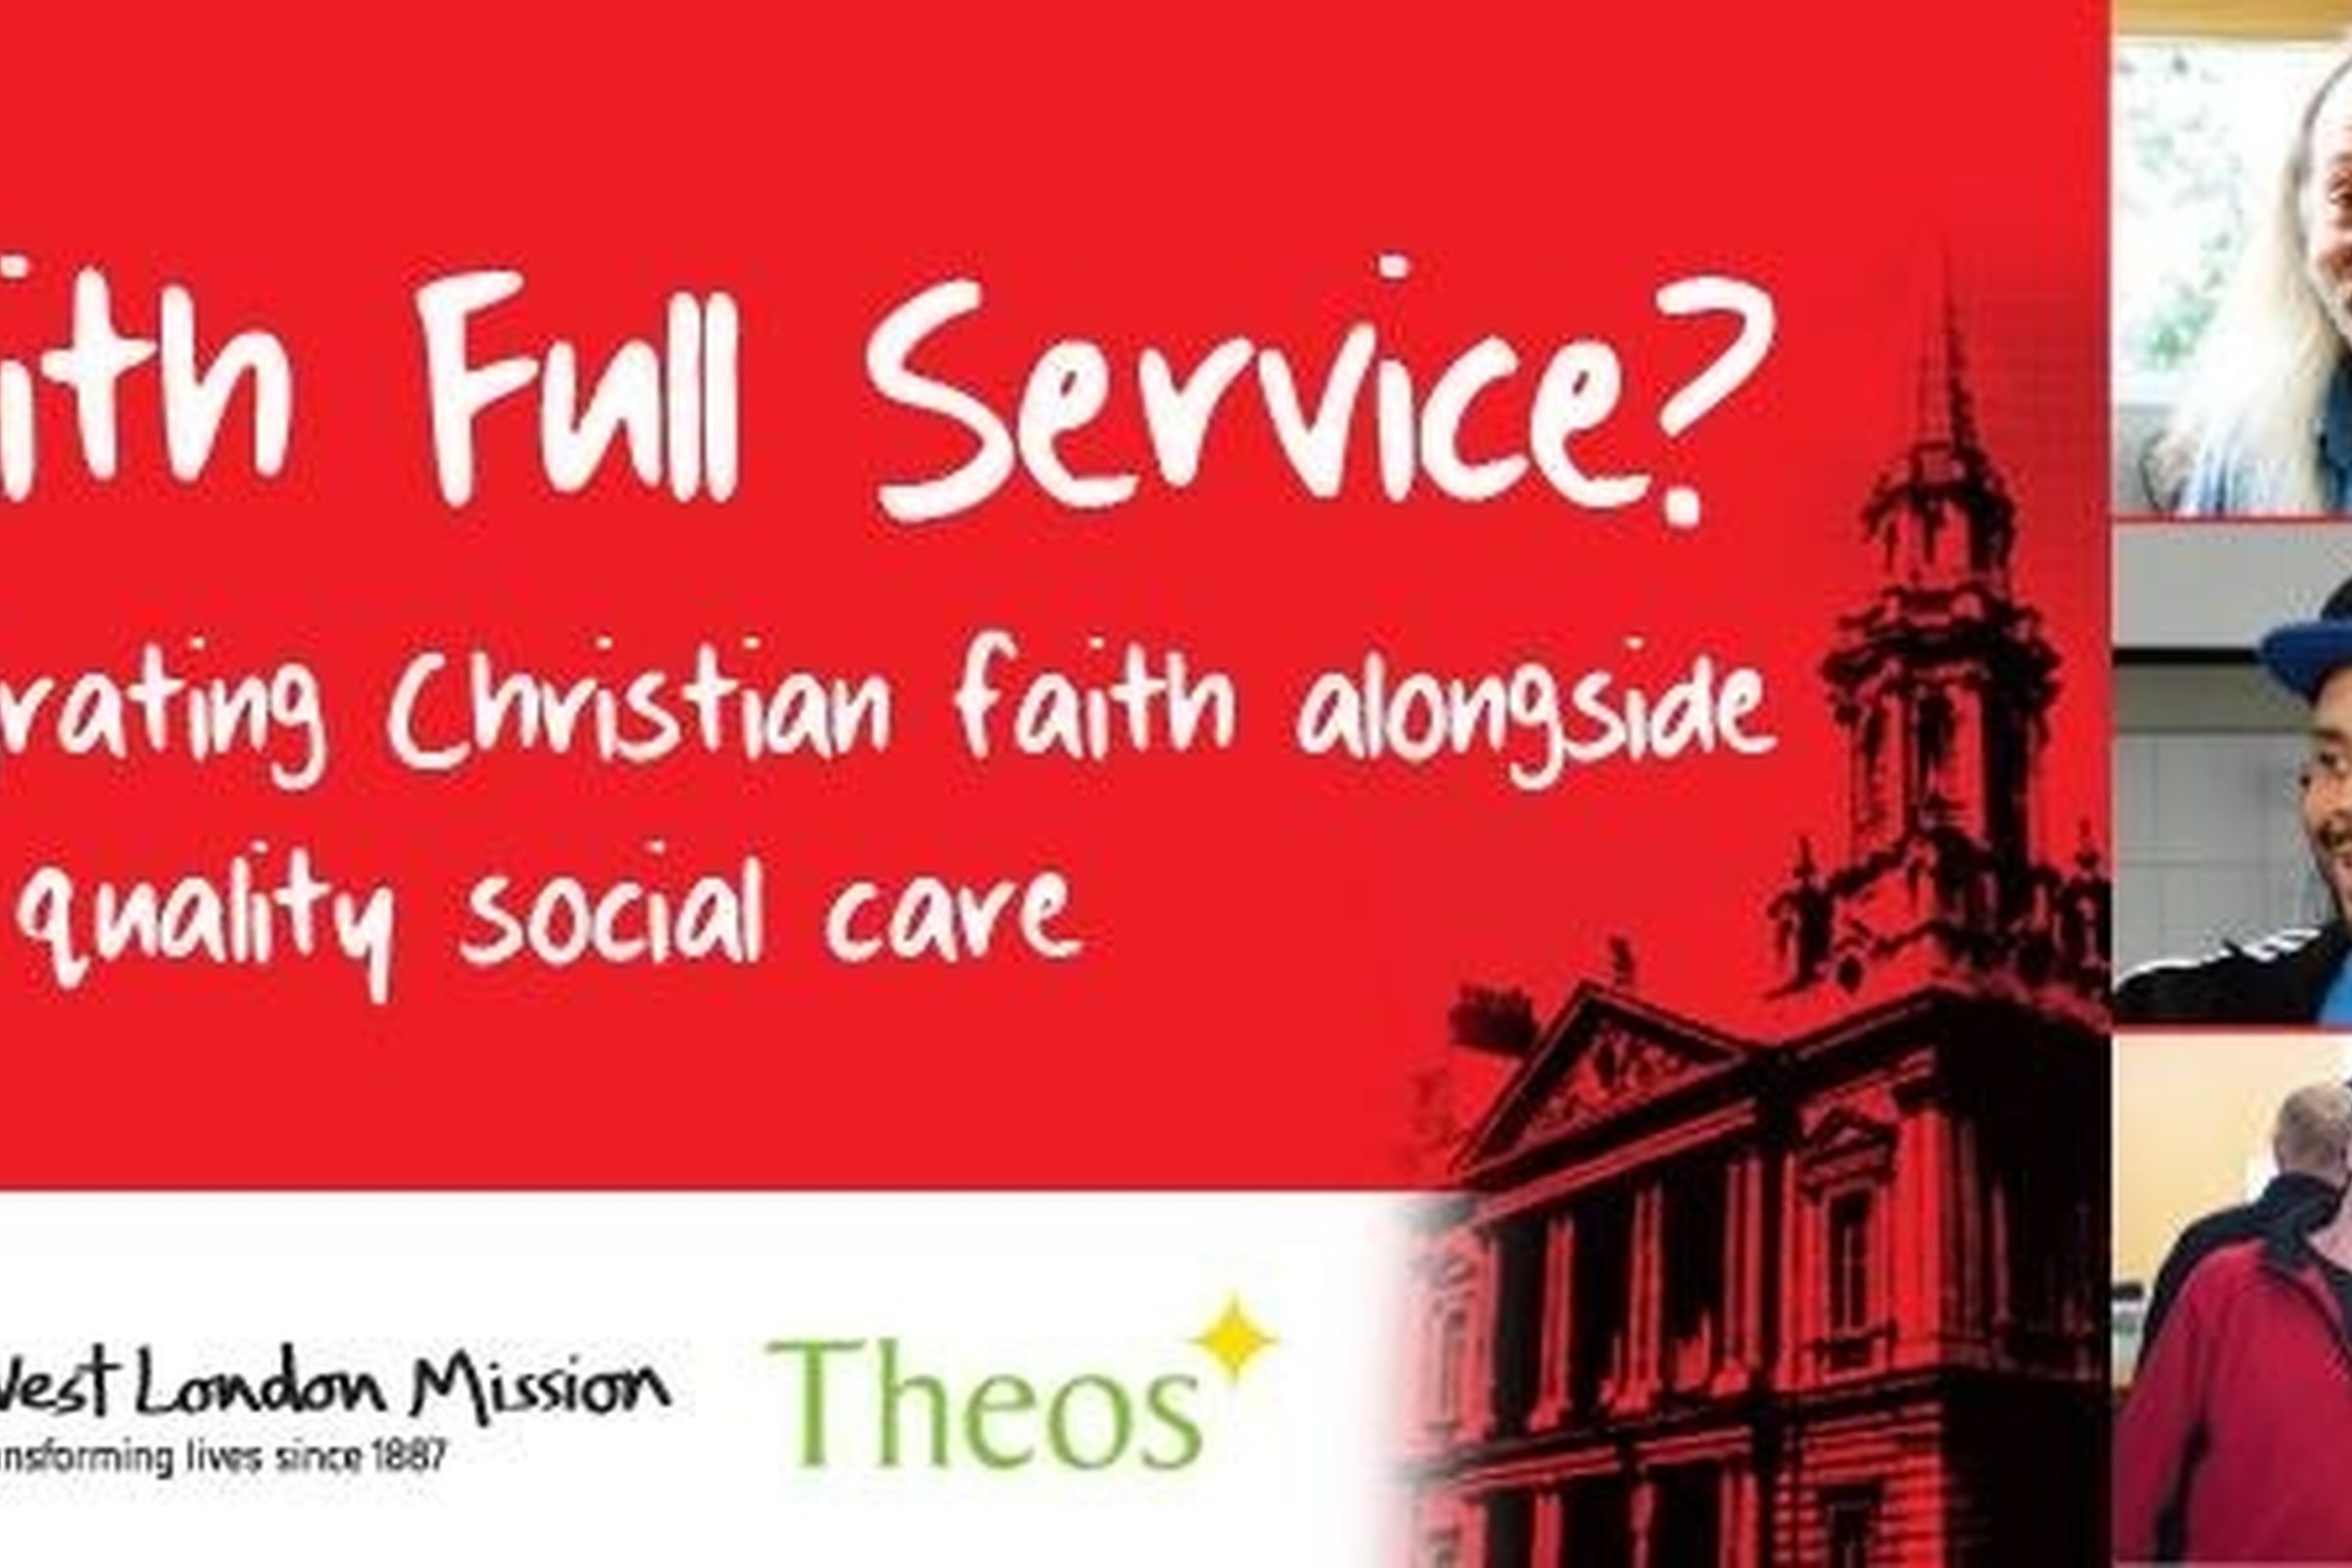 Faith Full Service?